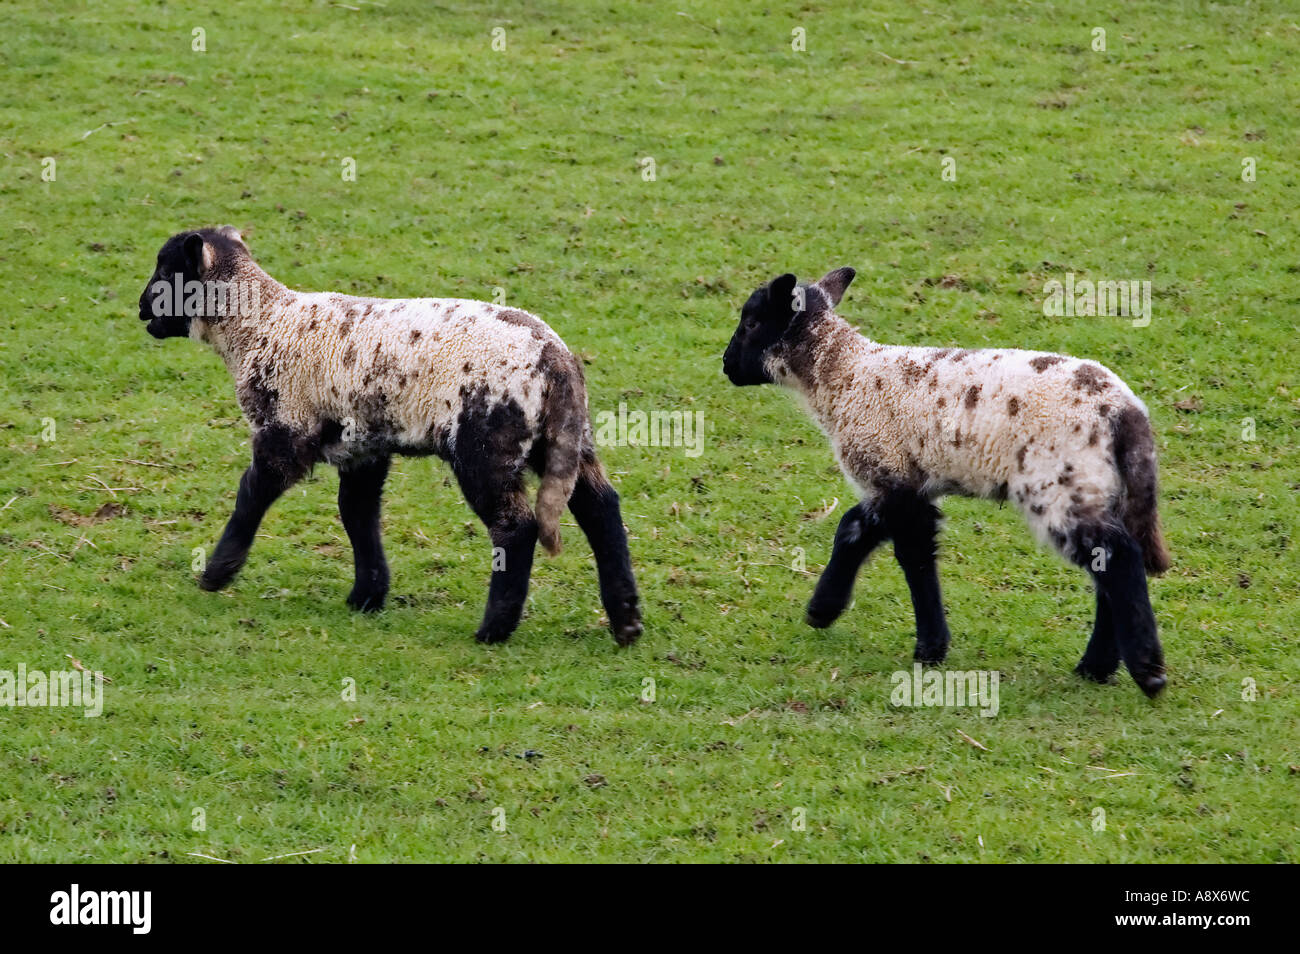 Deux agneaux noir et blanc marche dans un champ Banque D'Images